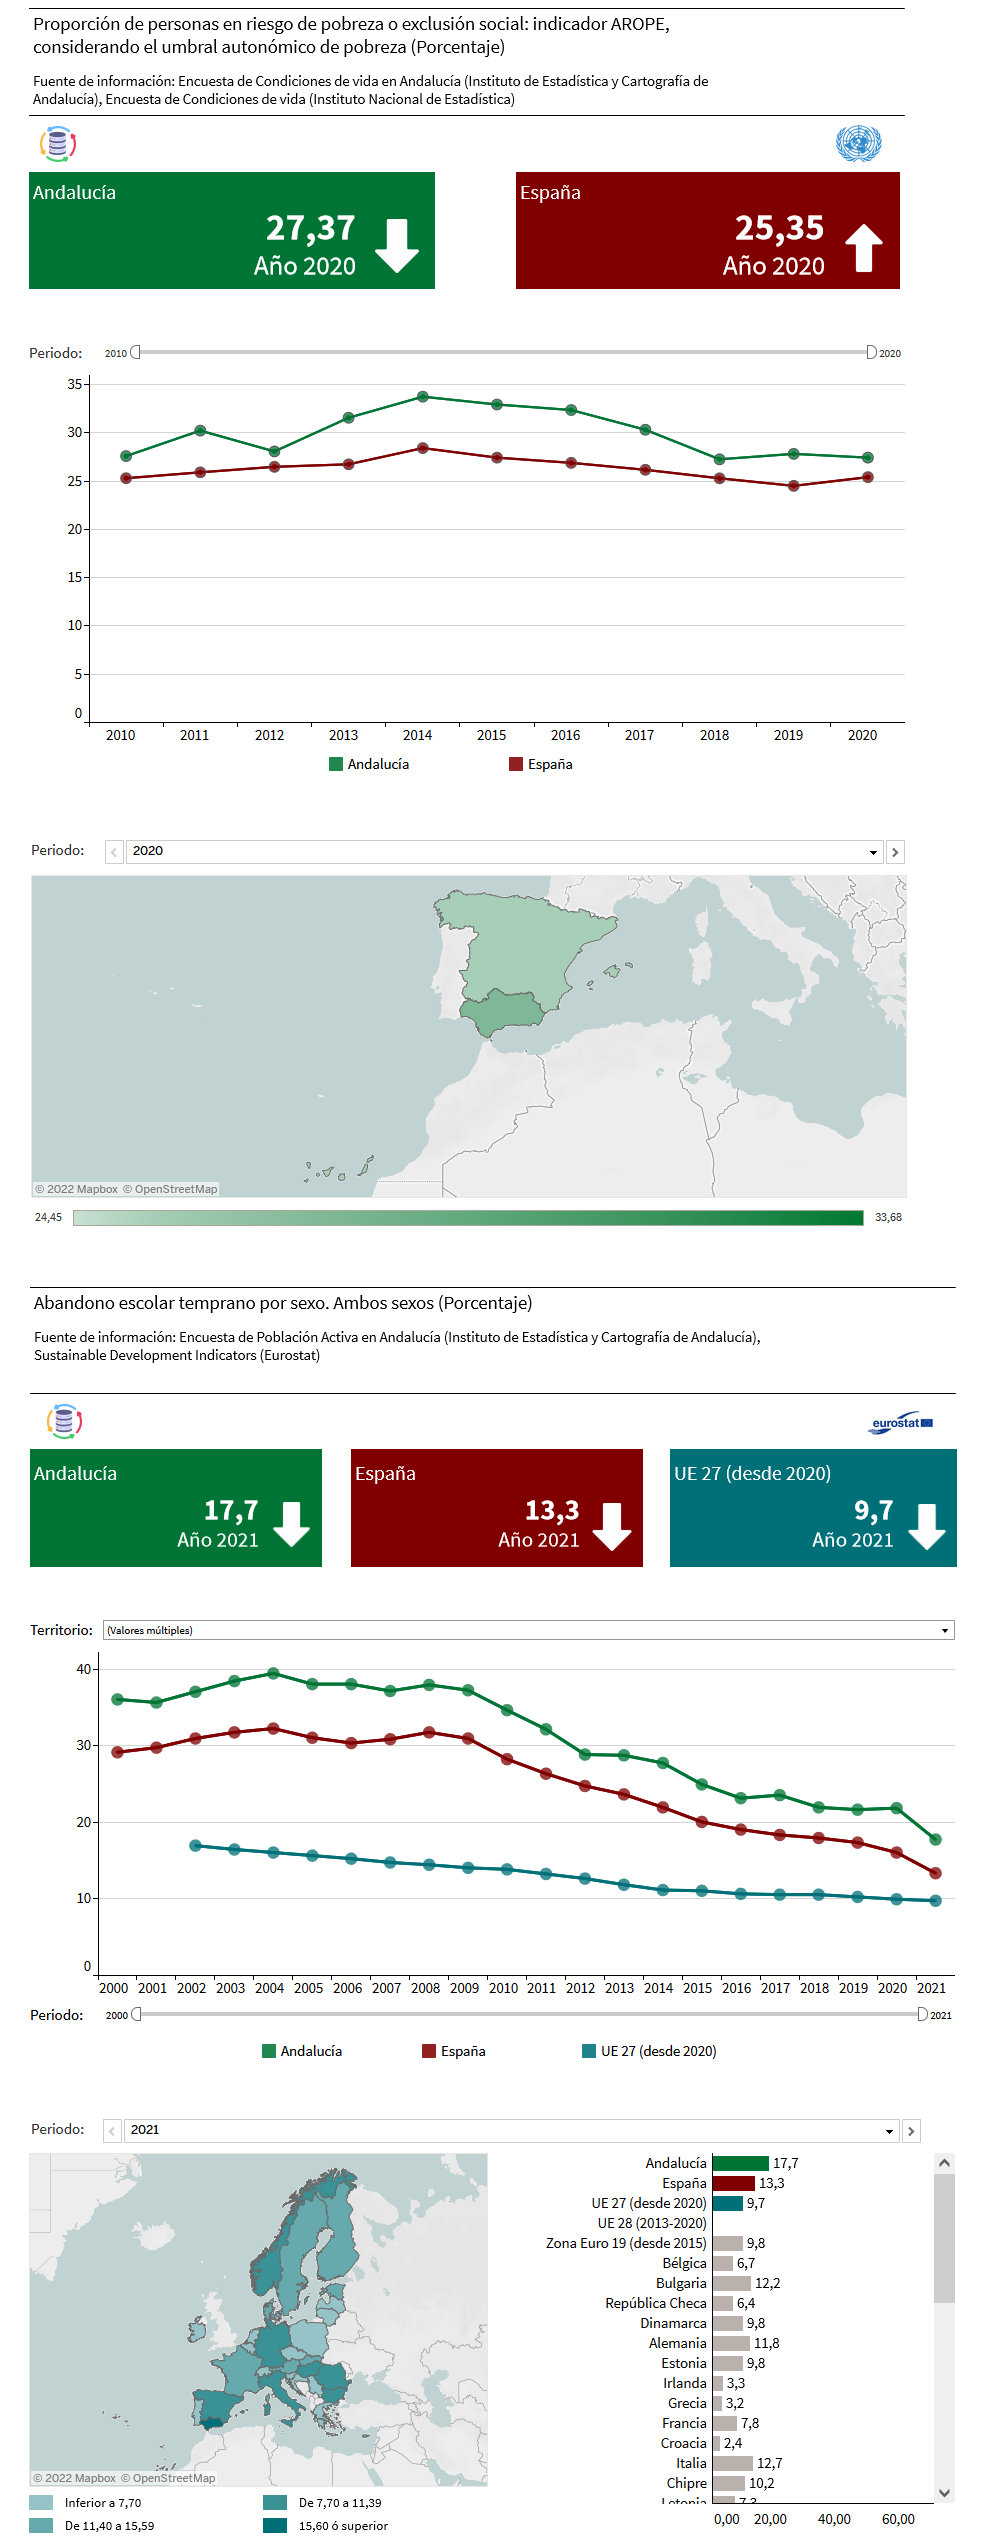 Visualizaciones interactivas de un indicador de Naciones Unidas y un indicador de Eurostat